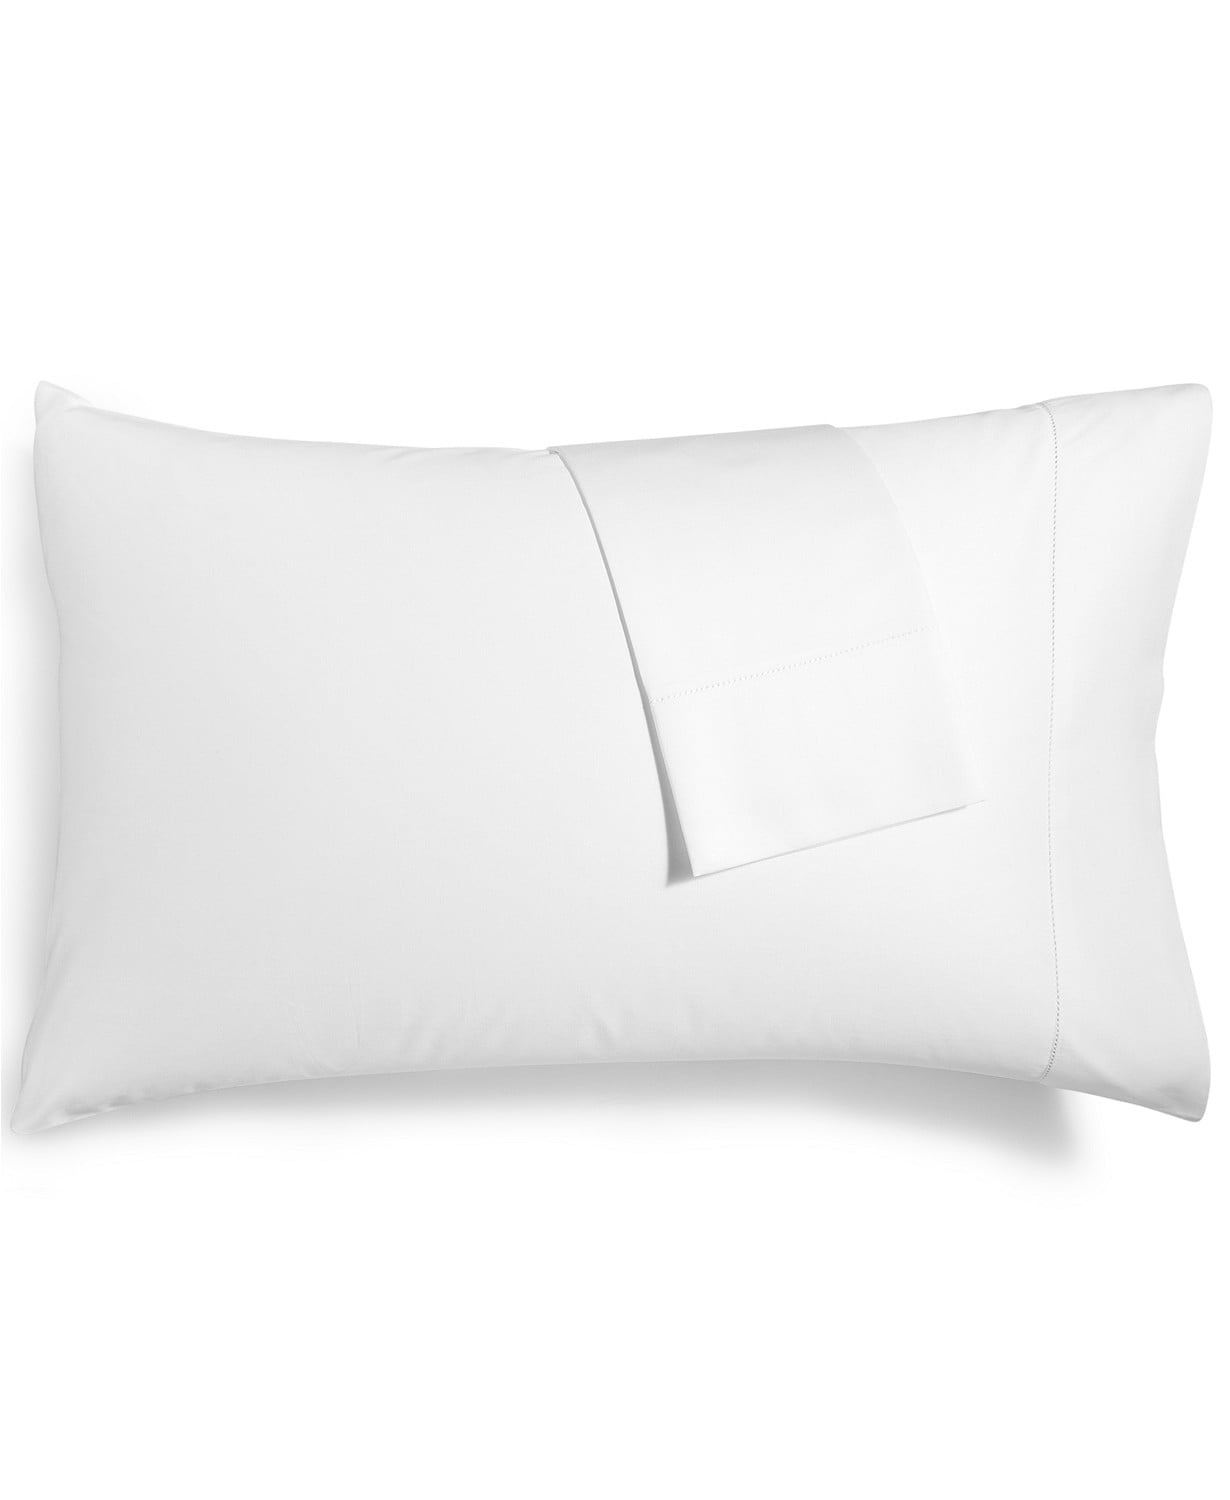 4 new white king size hotel pillowcases 20x40 t180 threadcount 100% cotton 